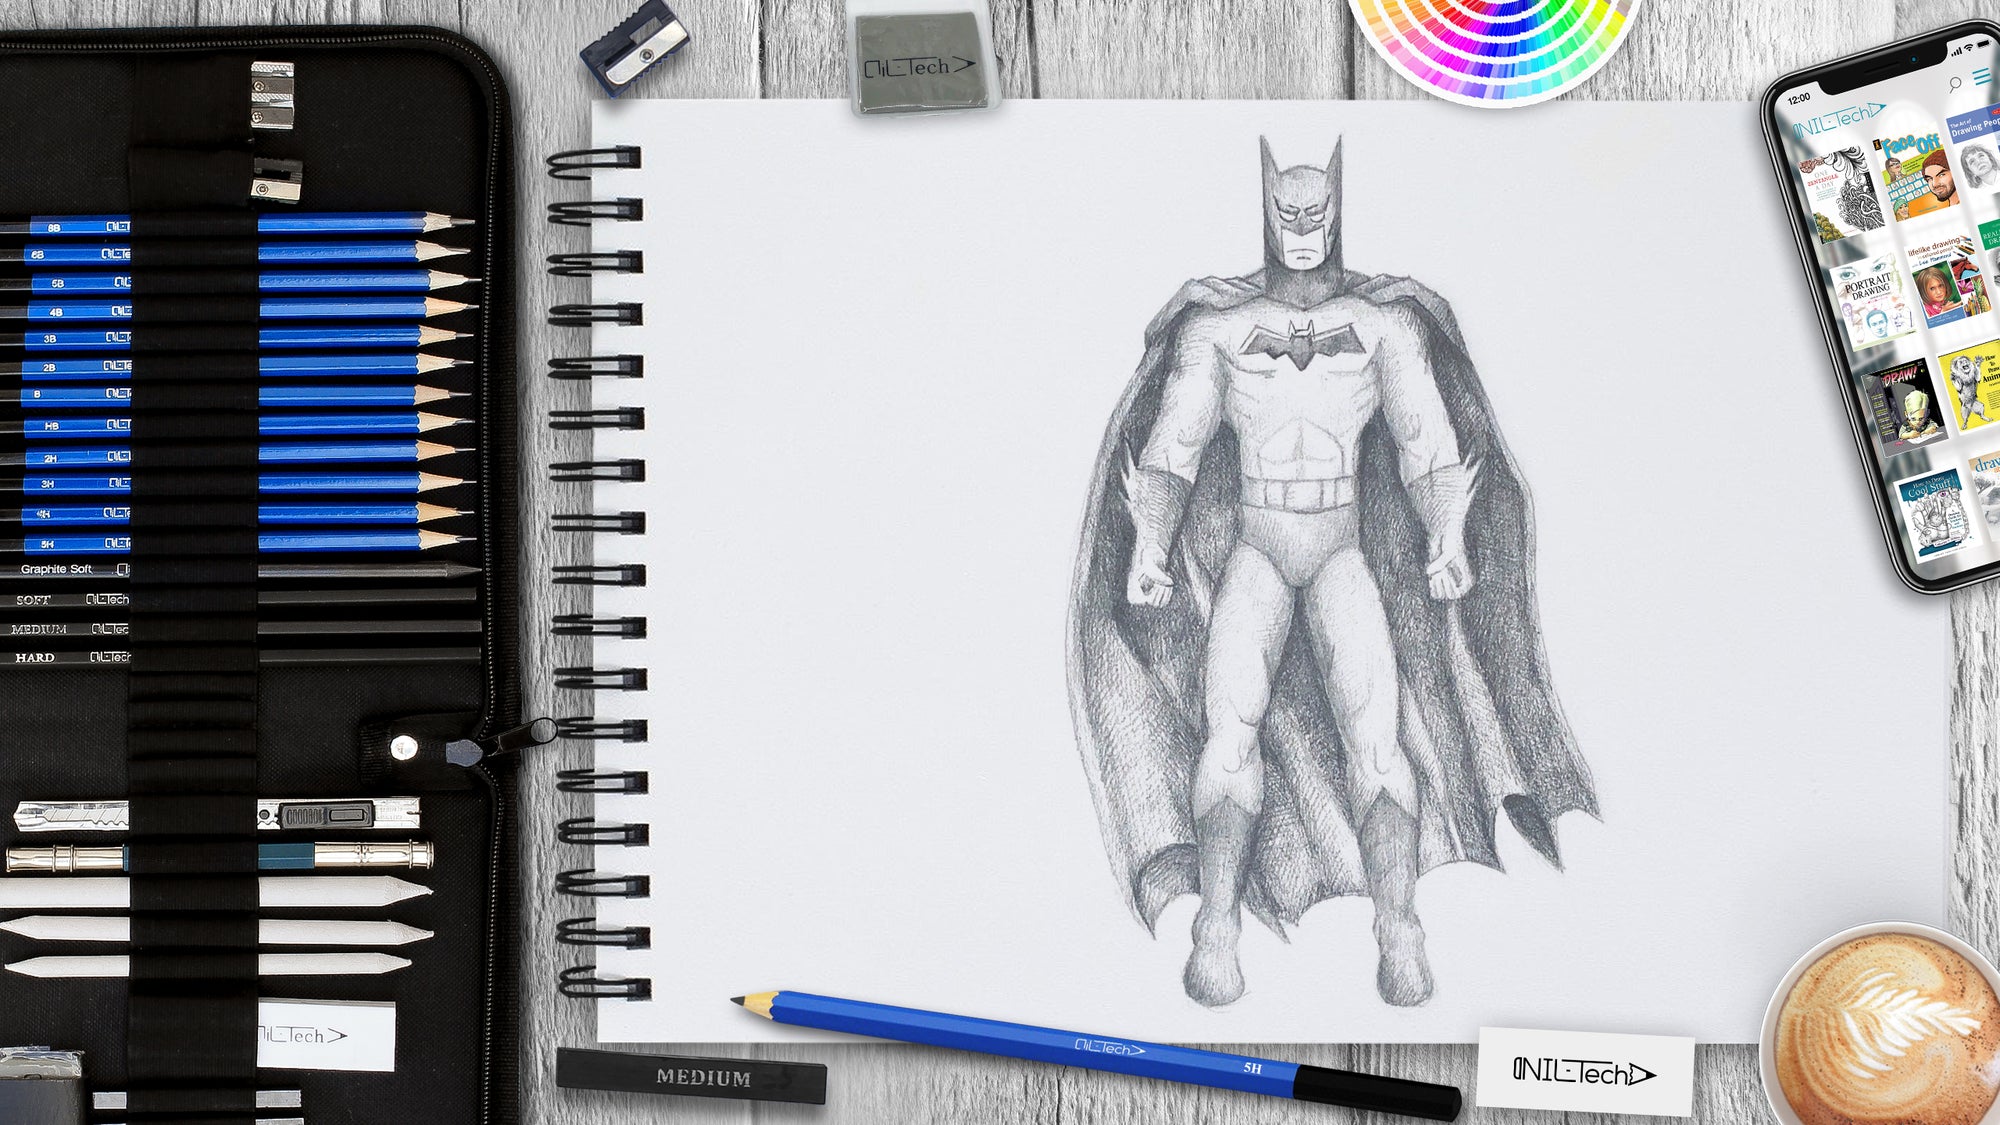 how to draw batman